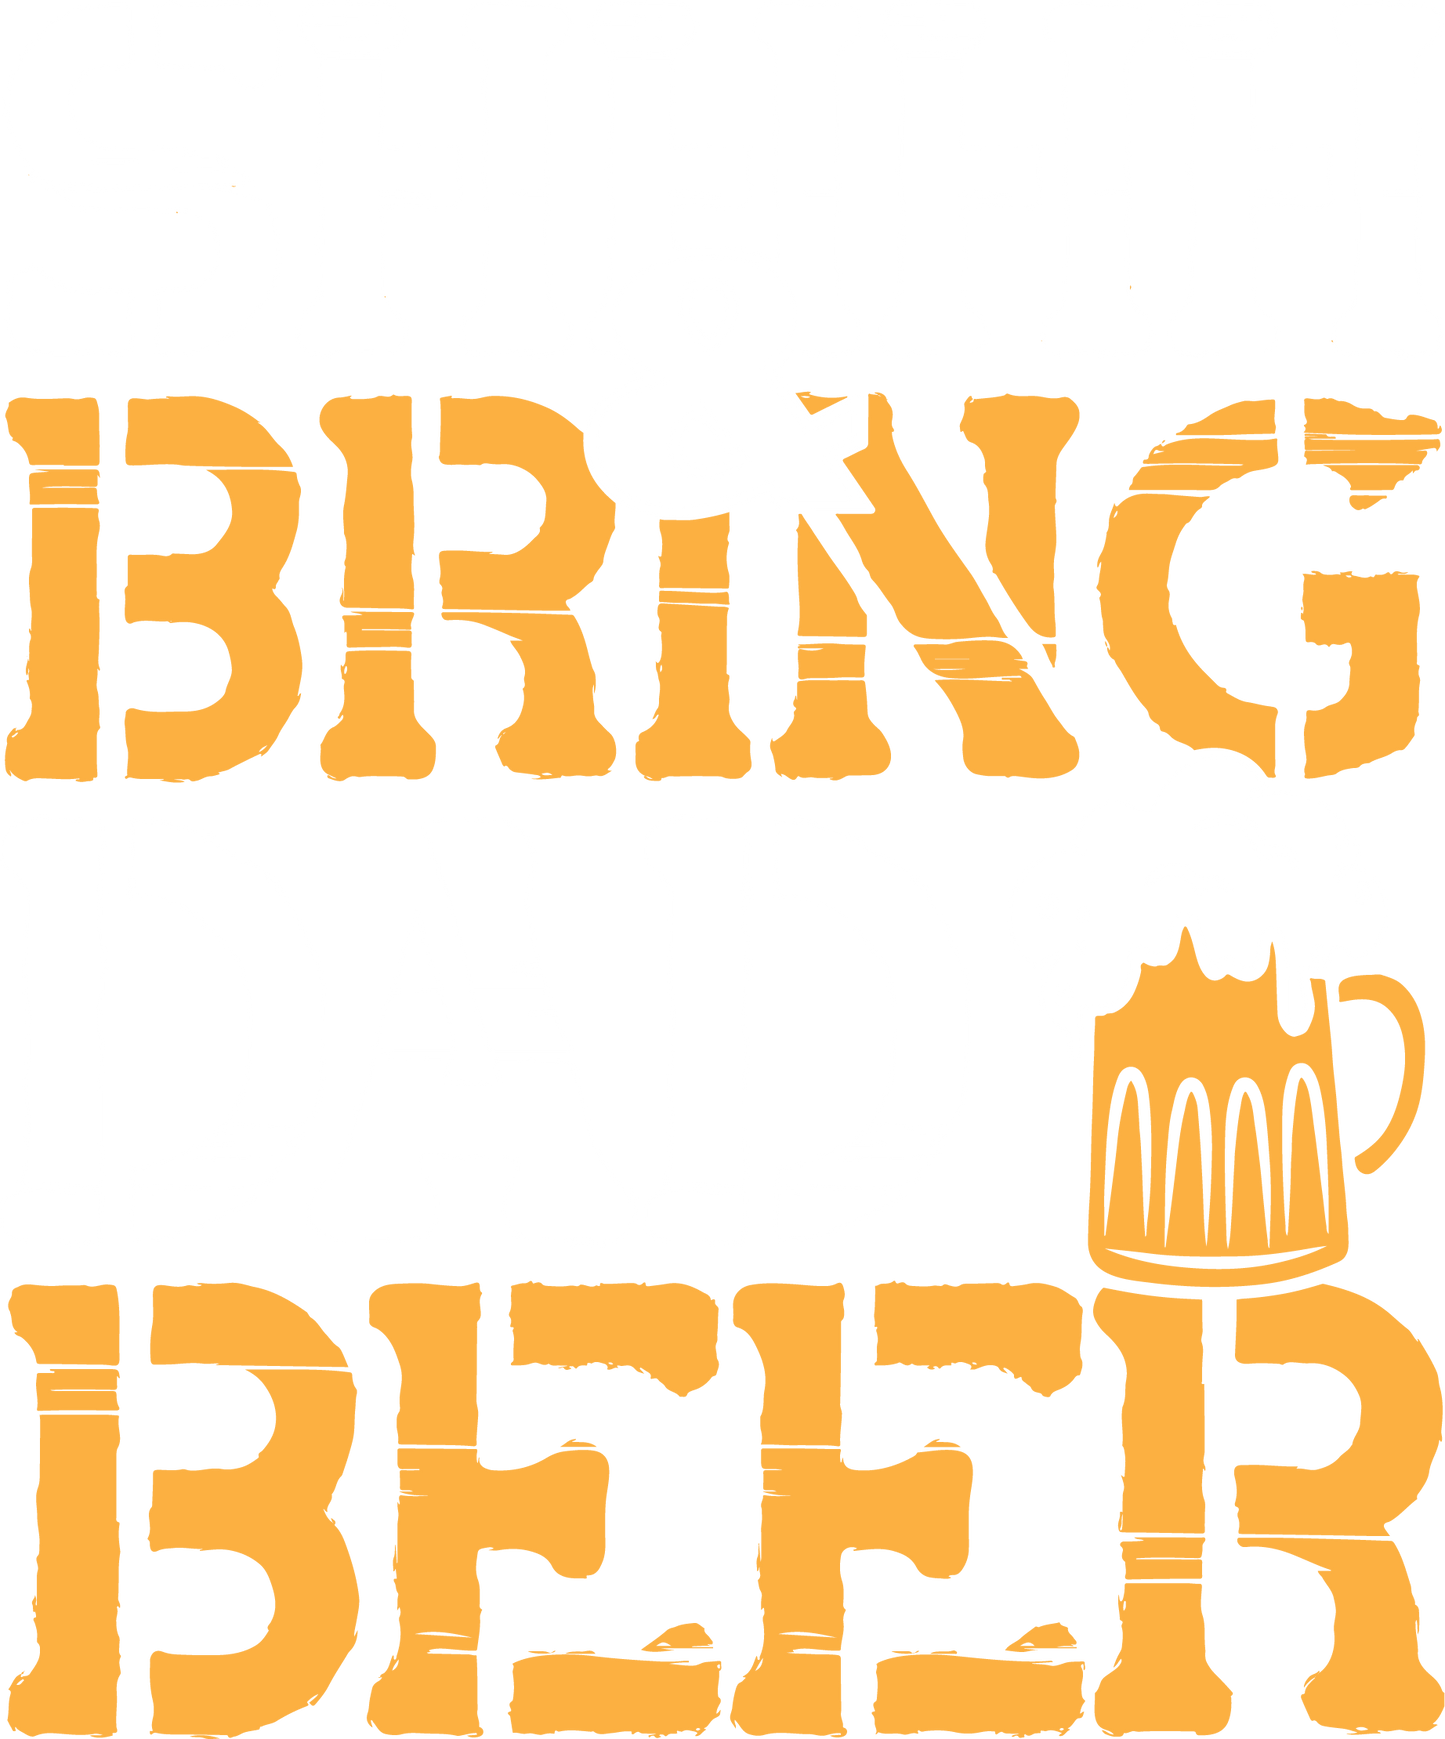 SHH, & Bring Dad Beer